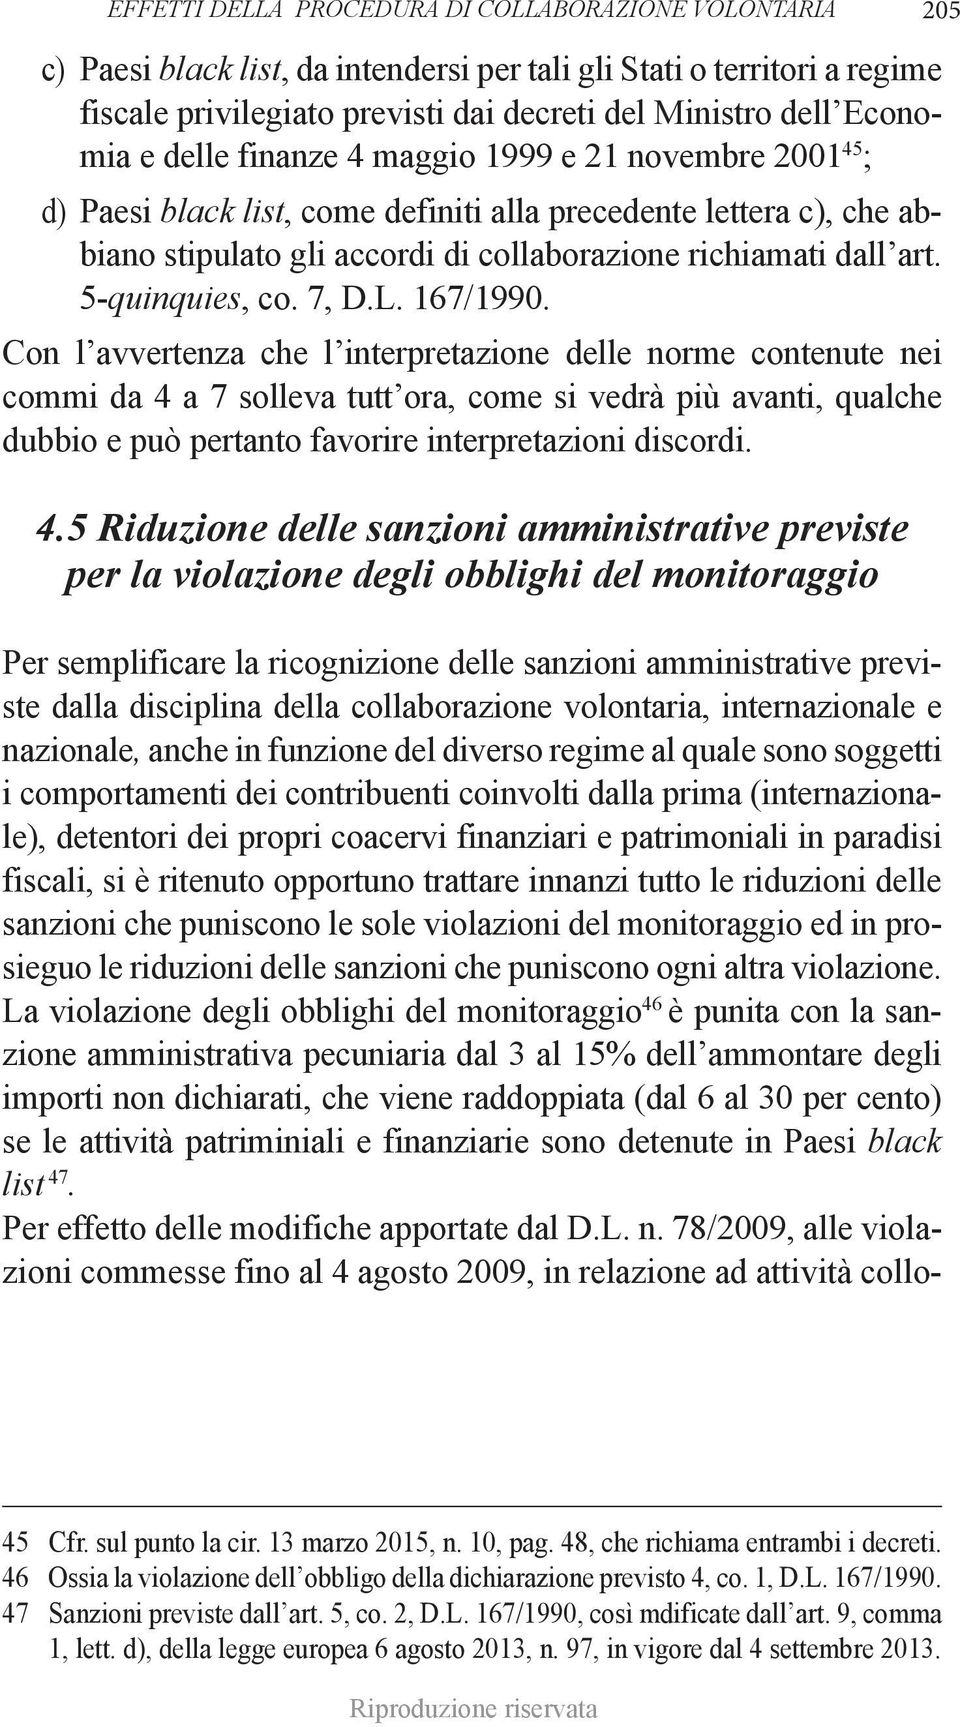 5-quinquies, co. 7, D.L. 167/1990.